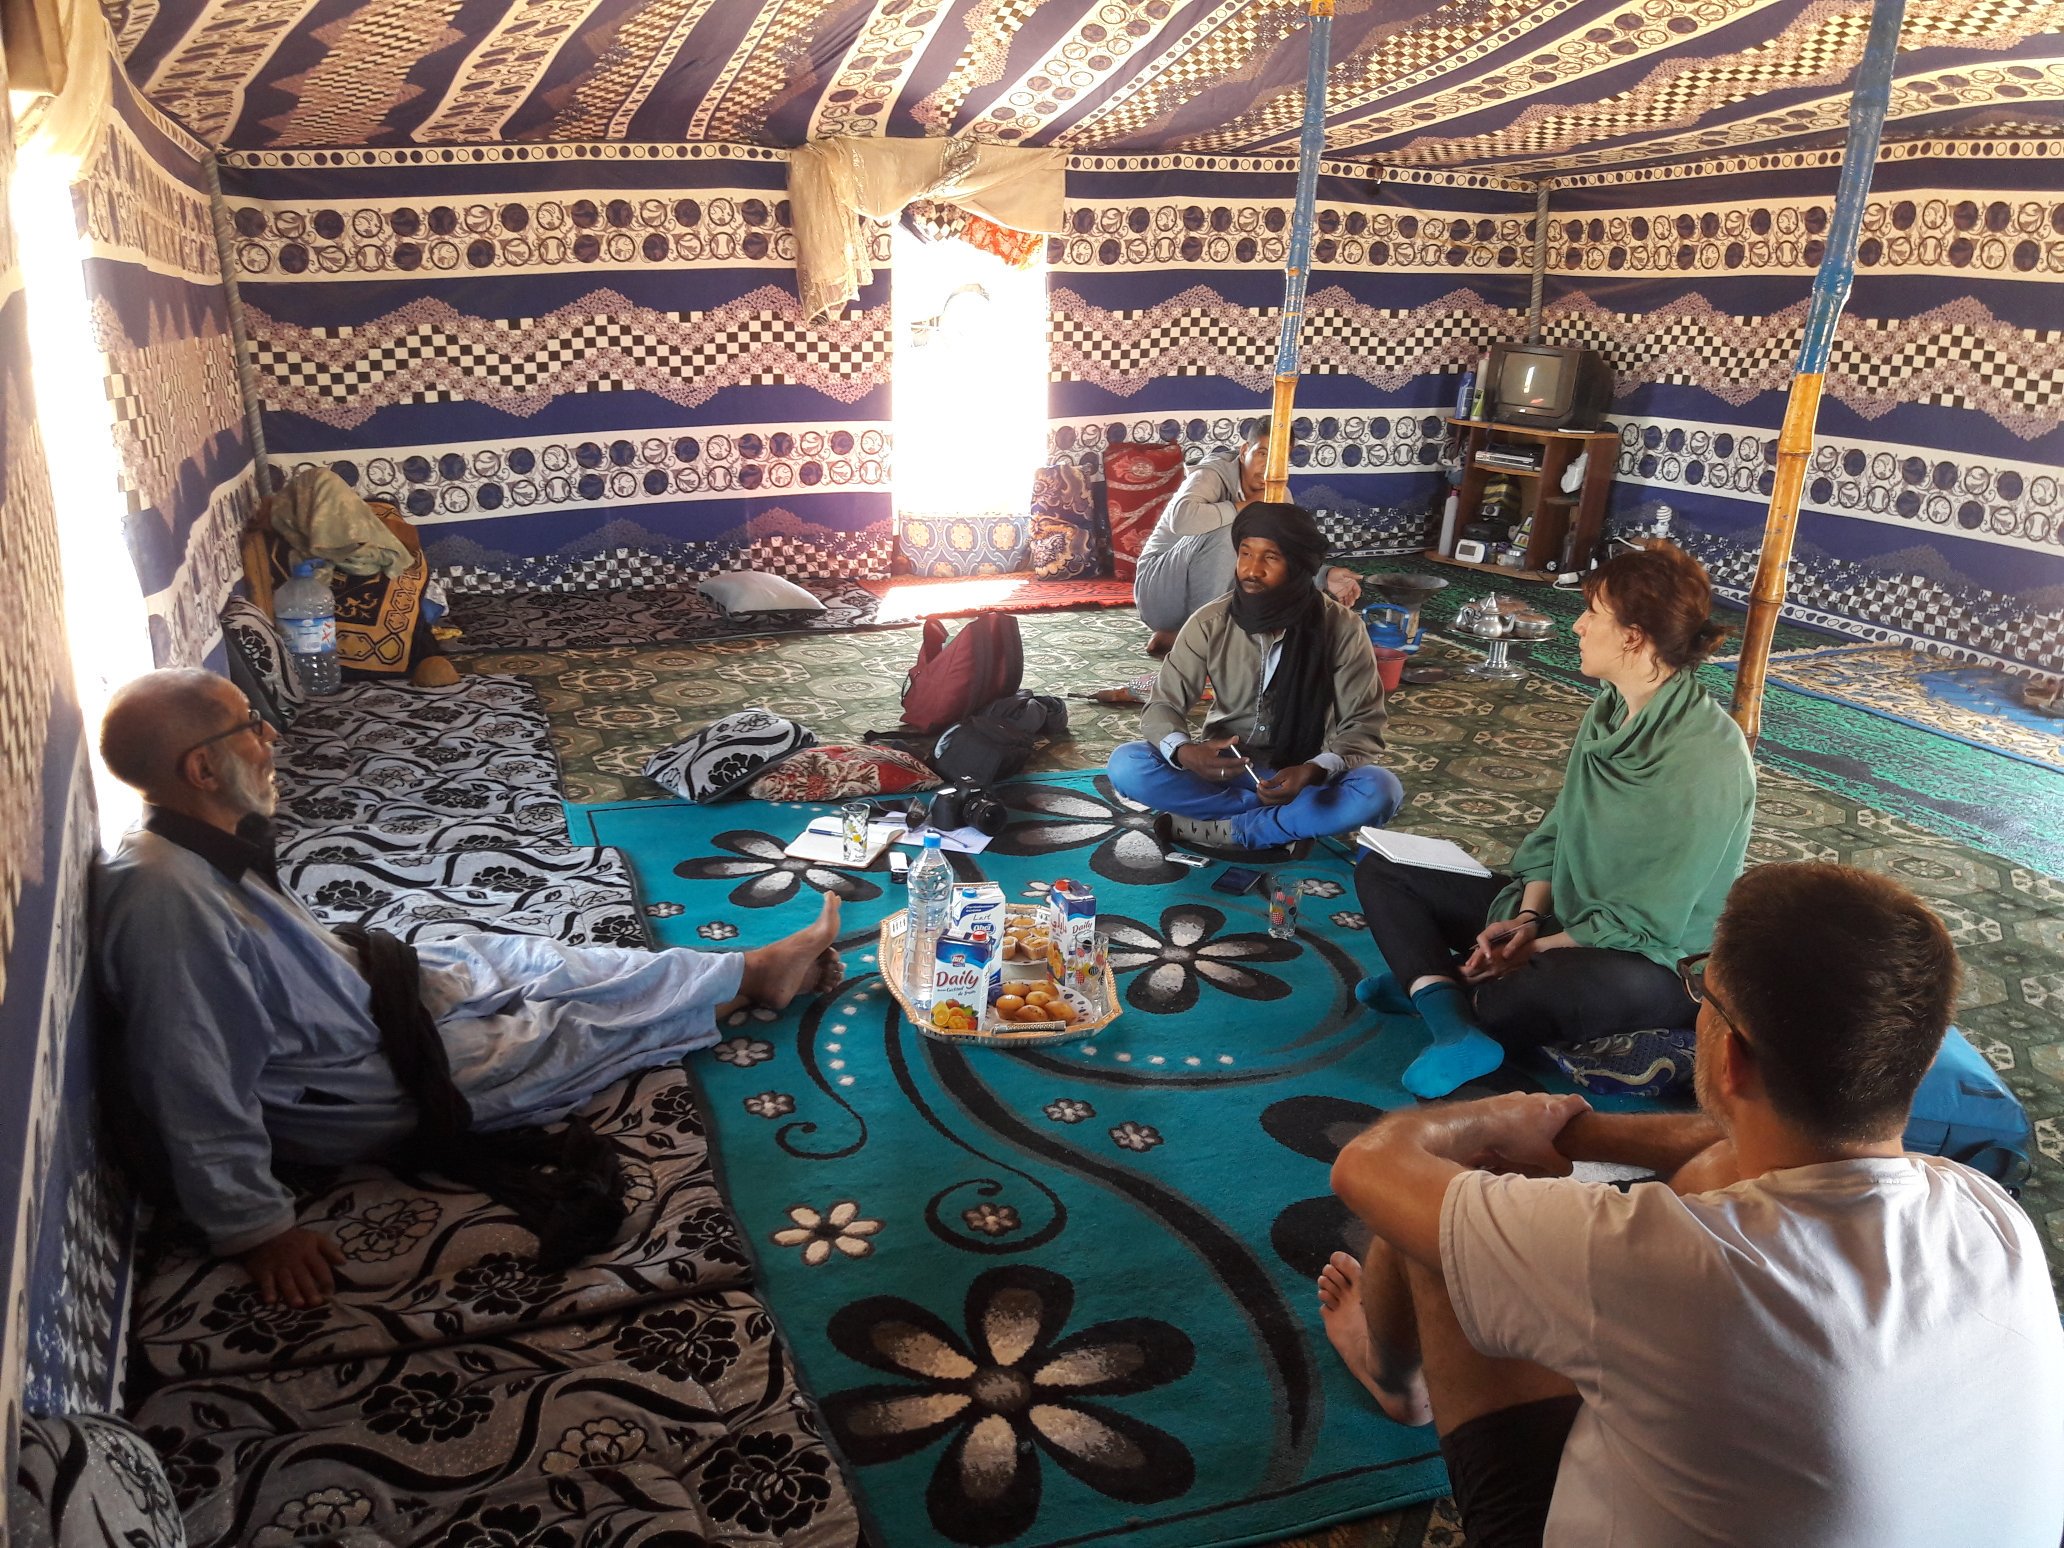 Contribució al coneixement de la realitat social i el patrimoni cultural del poble sahrauí